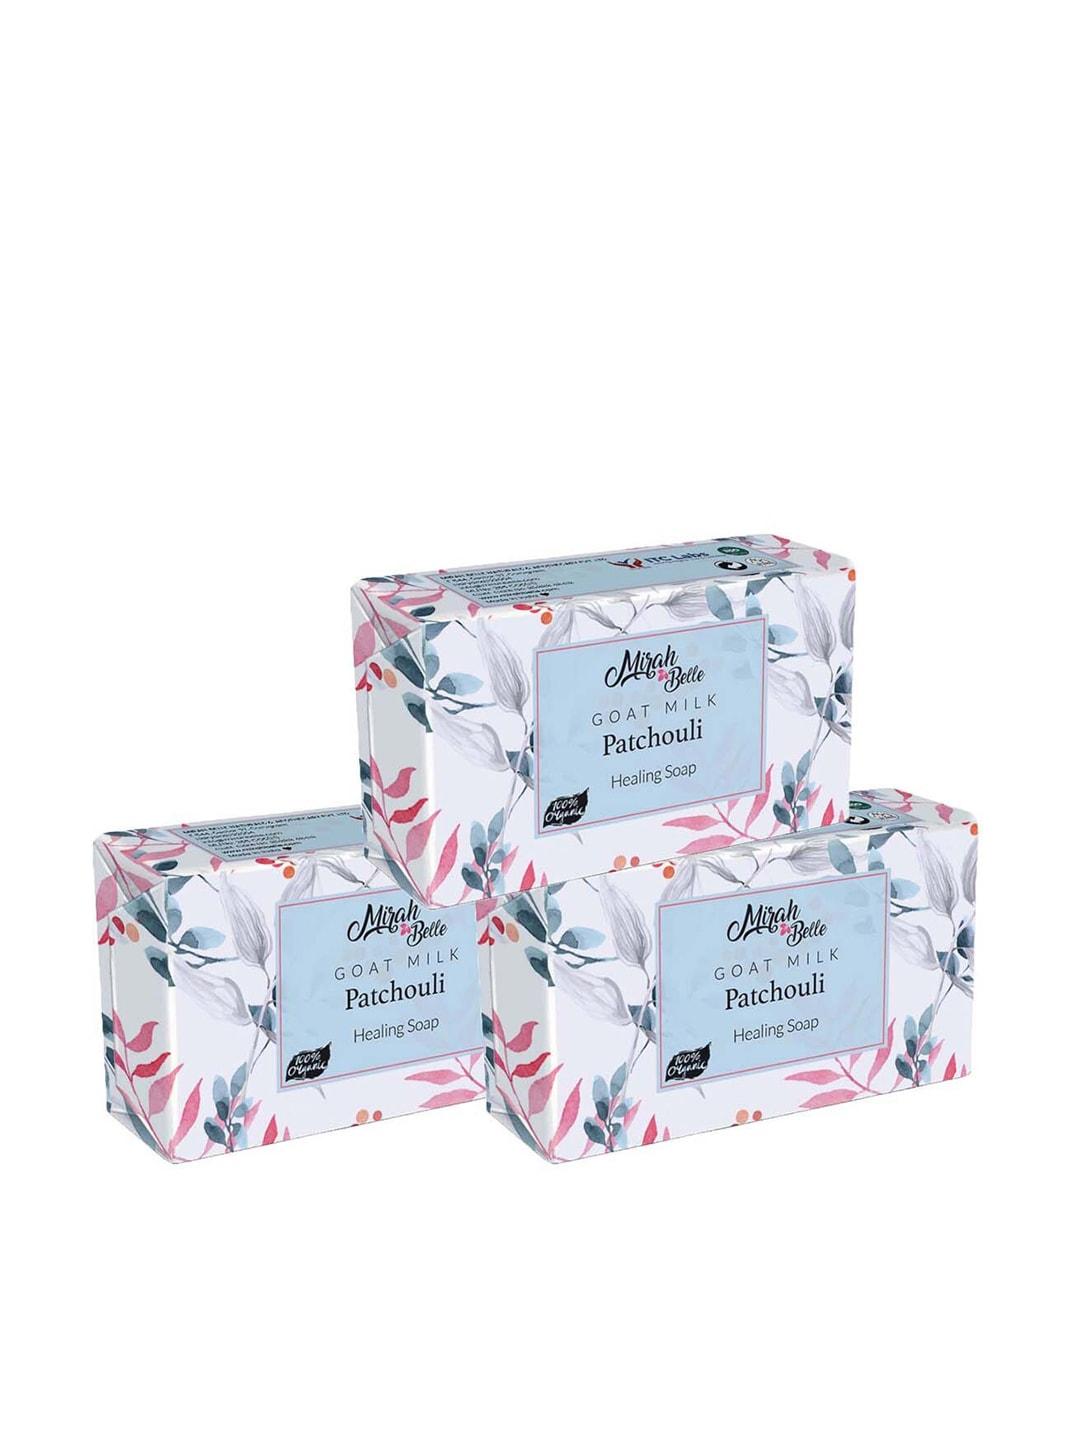 Mirah Belle Unisex Pack Of 3 Goat Milk Patchouli Anti Blemish Soap 125g